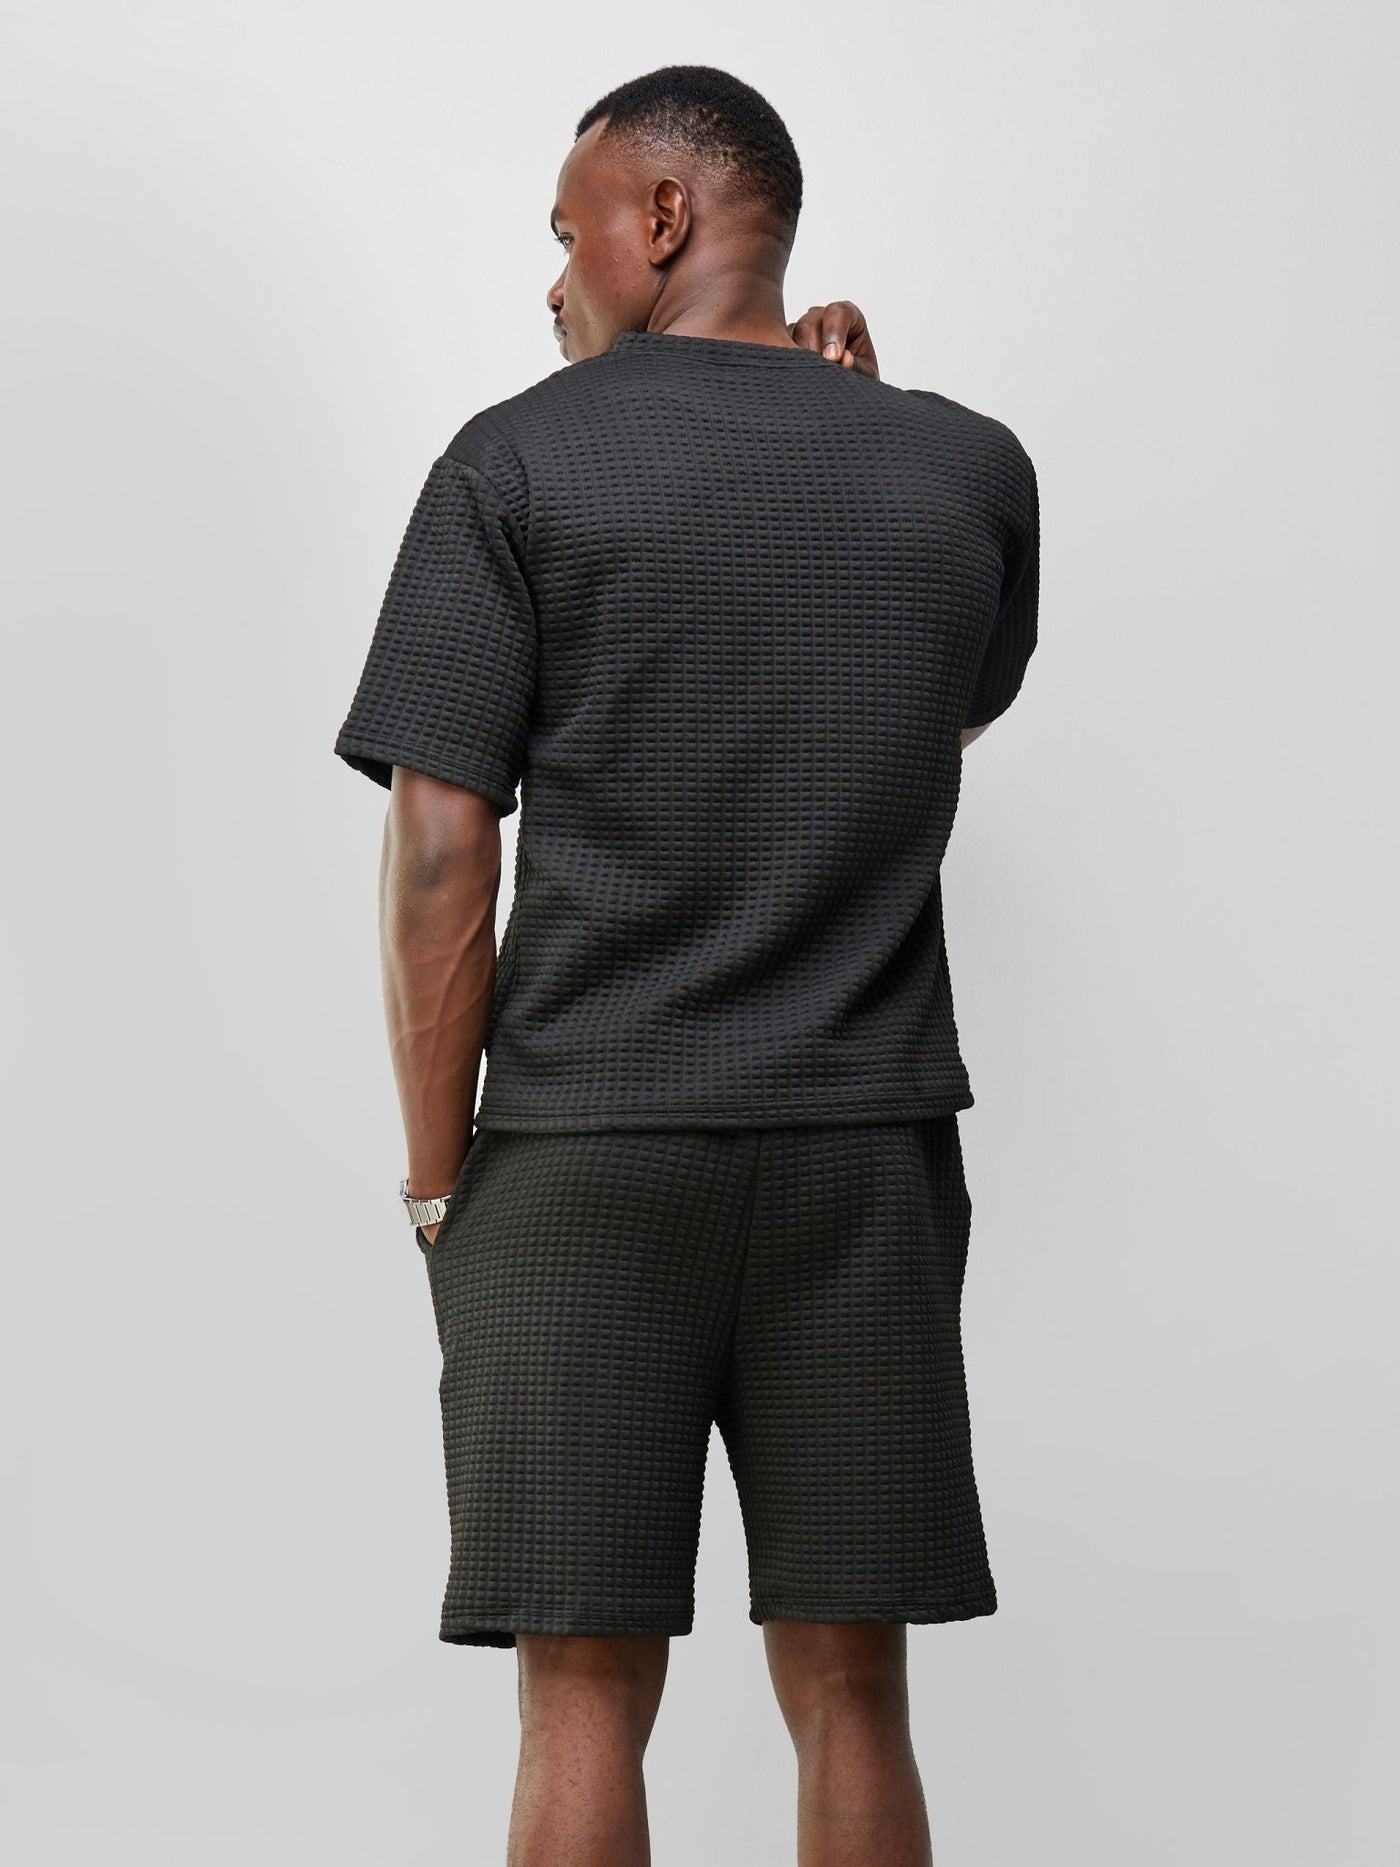 Zetu Men's Square Textured Shorts - Black - Shopzetu